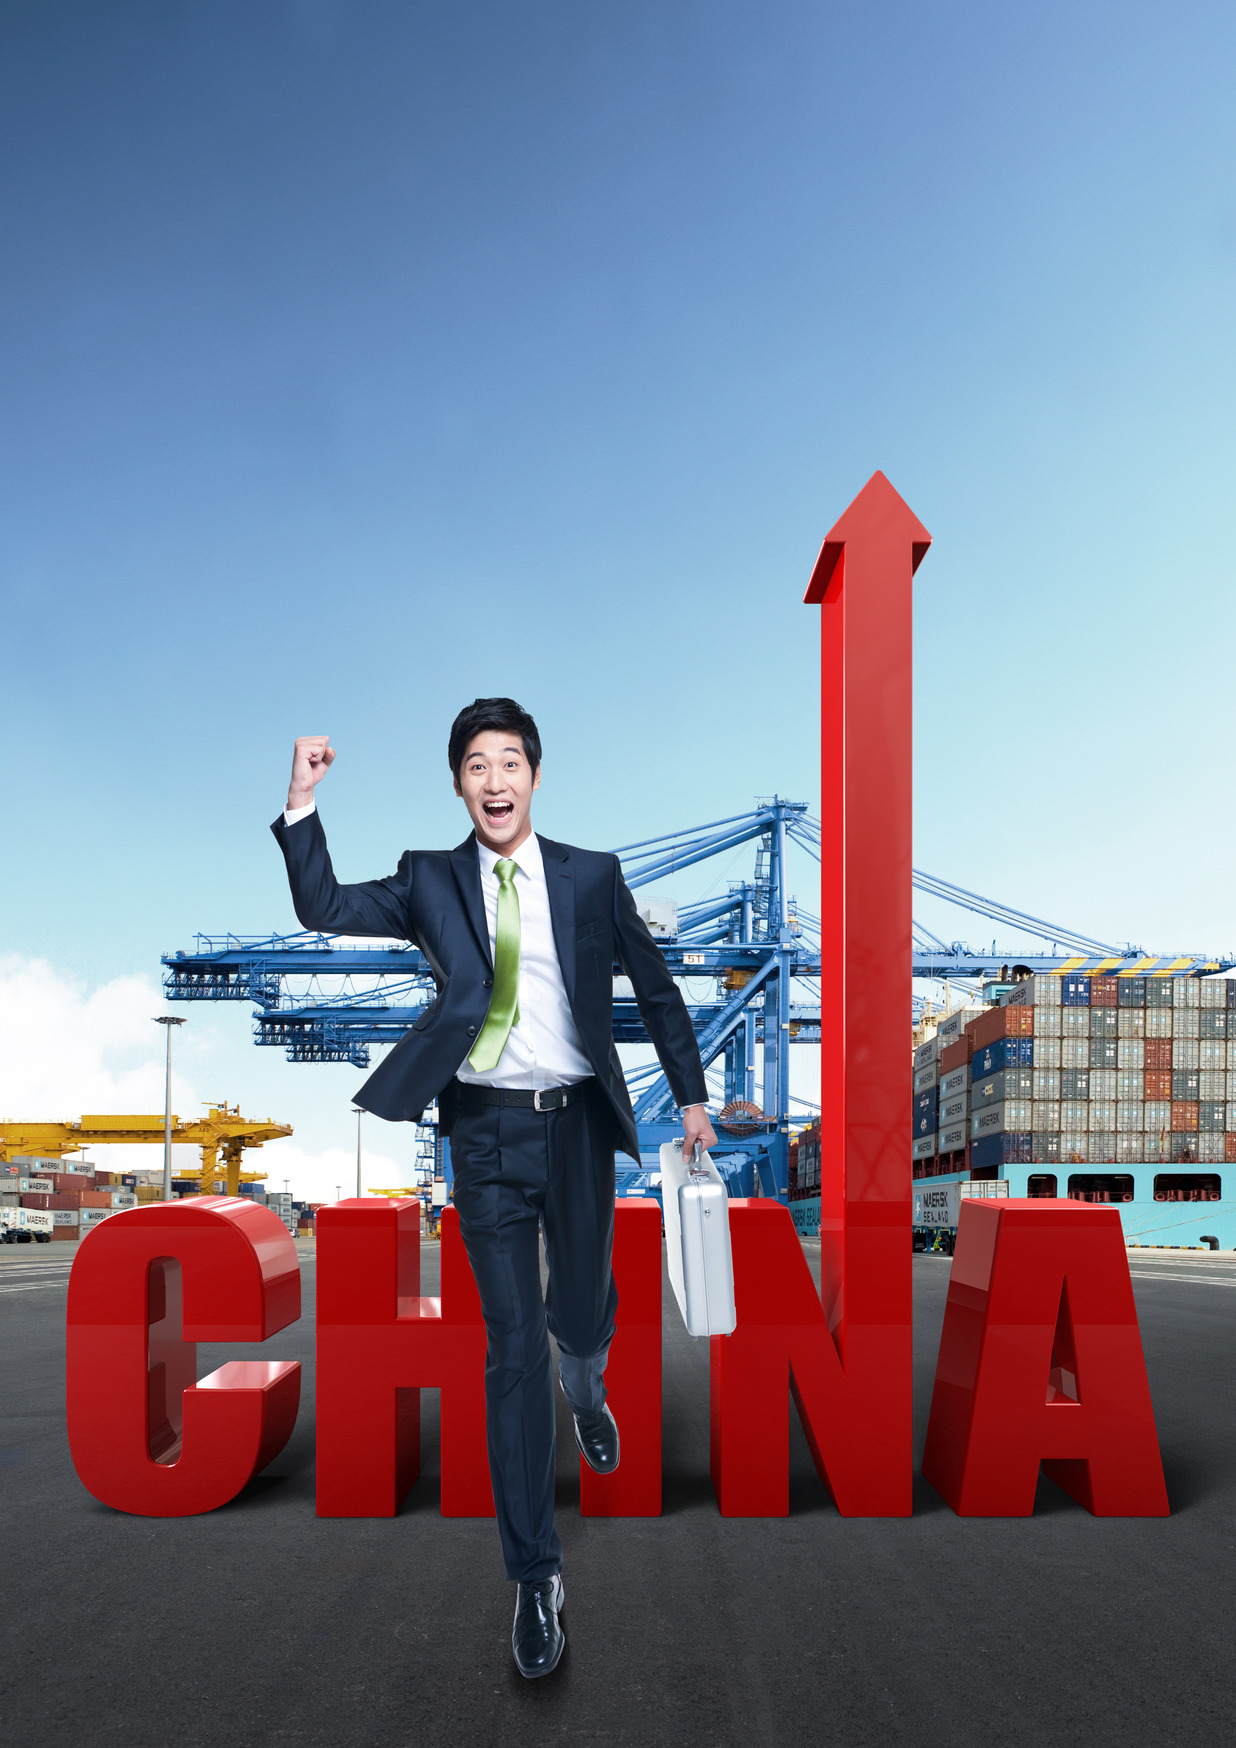 중국경제 성장모멘텀 286 - 투자재원 충분, 지속적 경제성장 가능성 높아